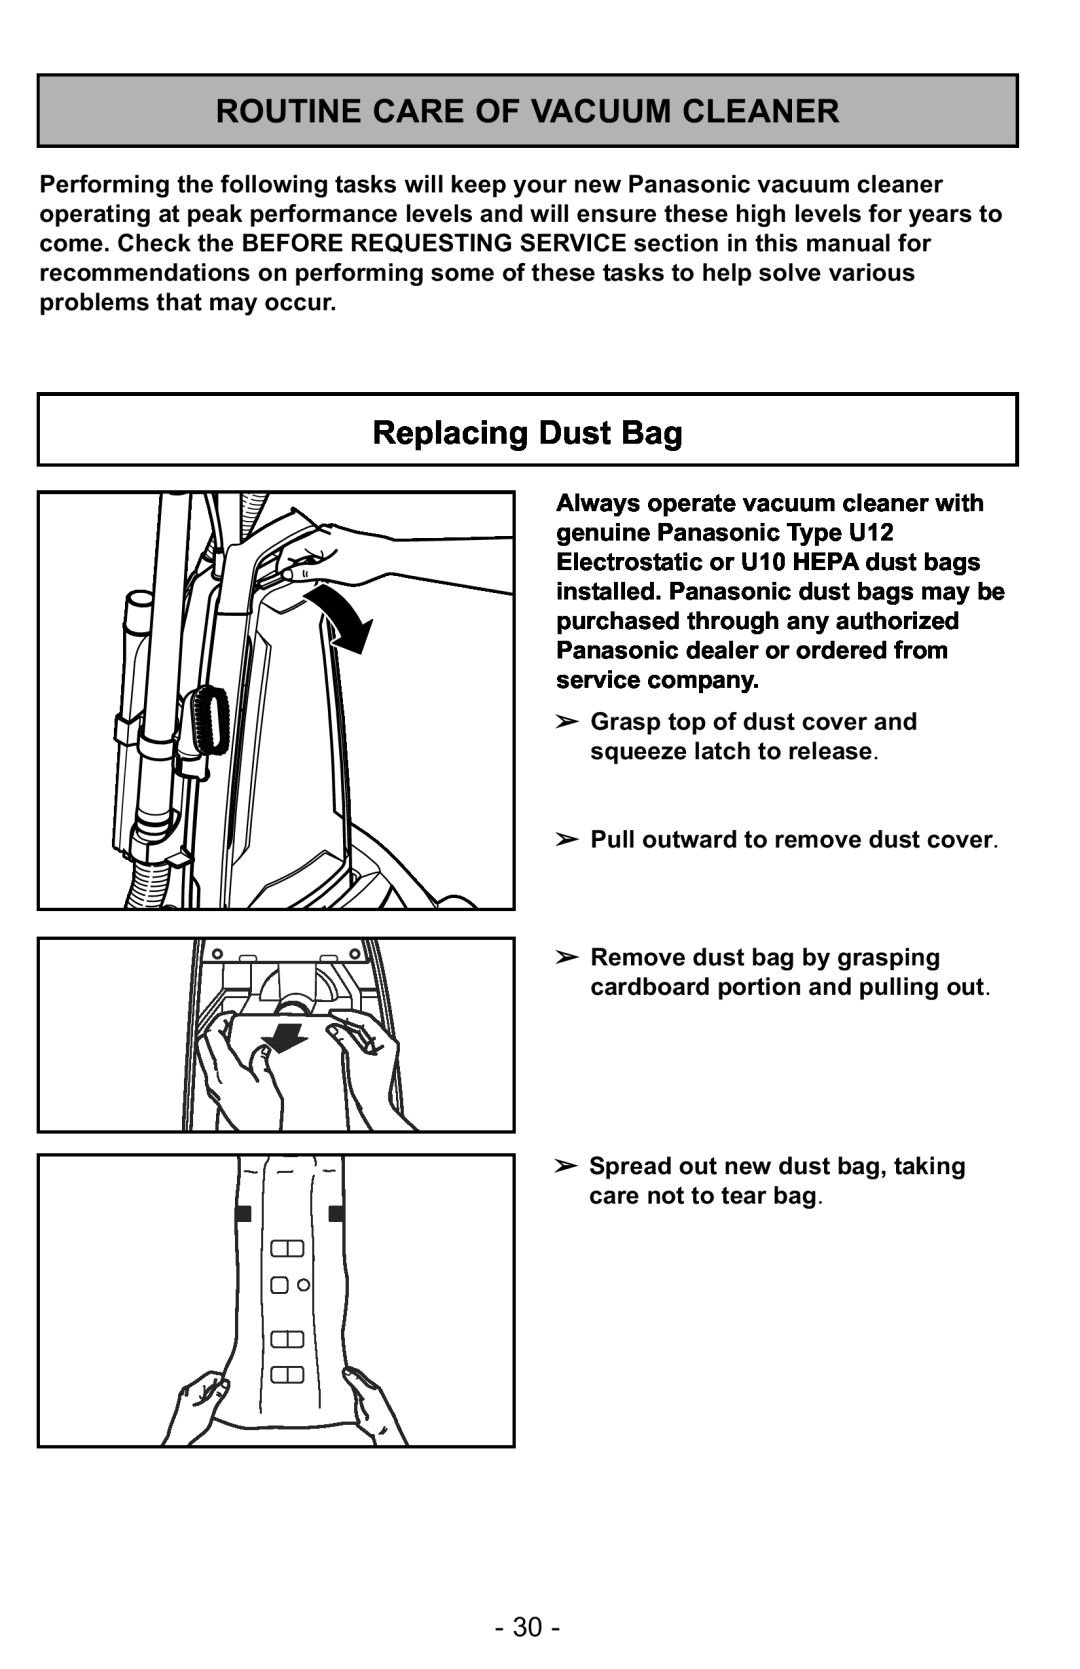 Panasonic MC-GG525 manuel dutilisation Routine Care Of Vacuum Cleaner, Replacing Dust Bag 